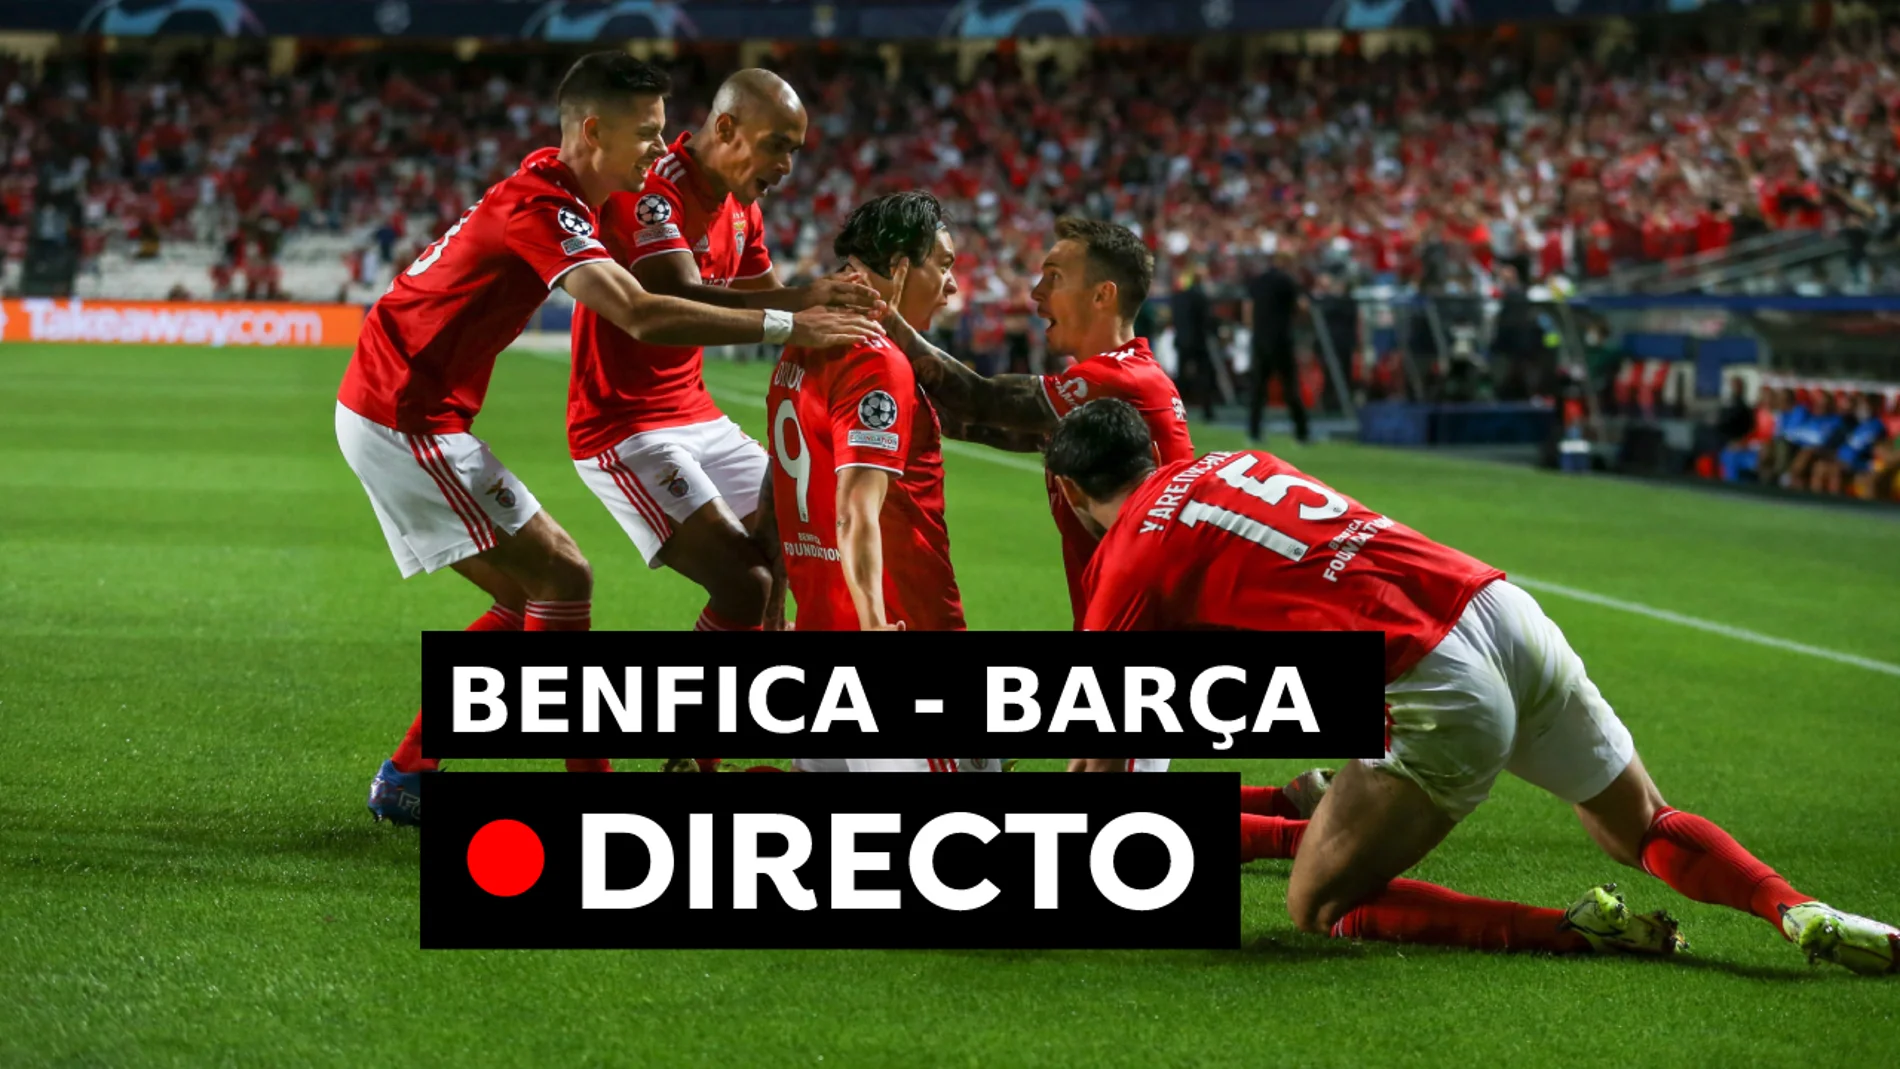 Resultado del Benfica - Barcelona hoy, en directo. Partido de la Champions League